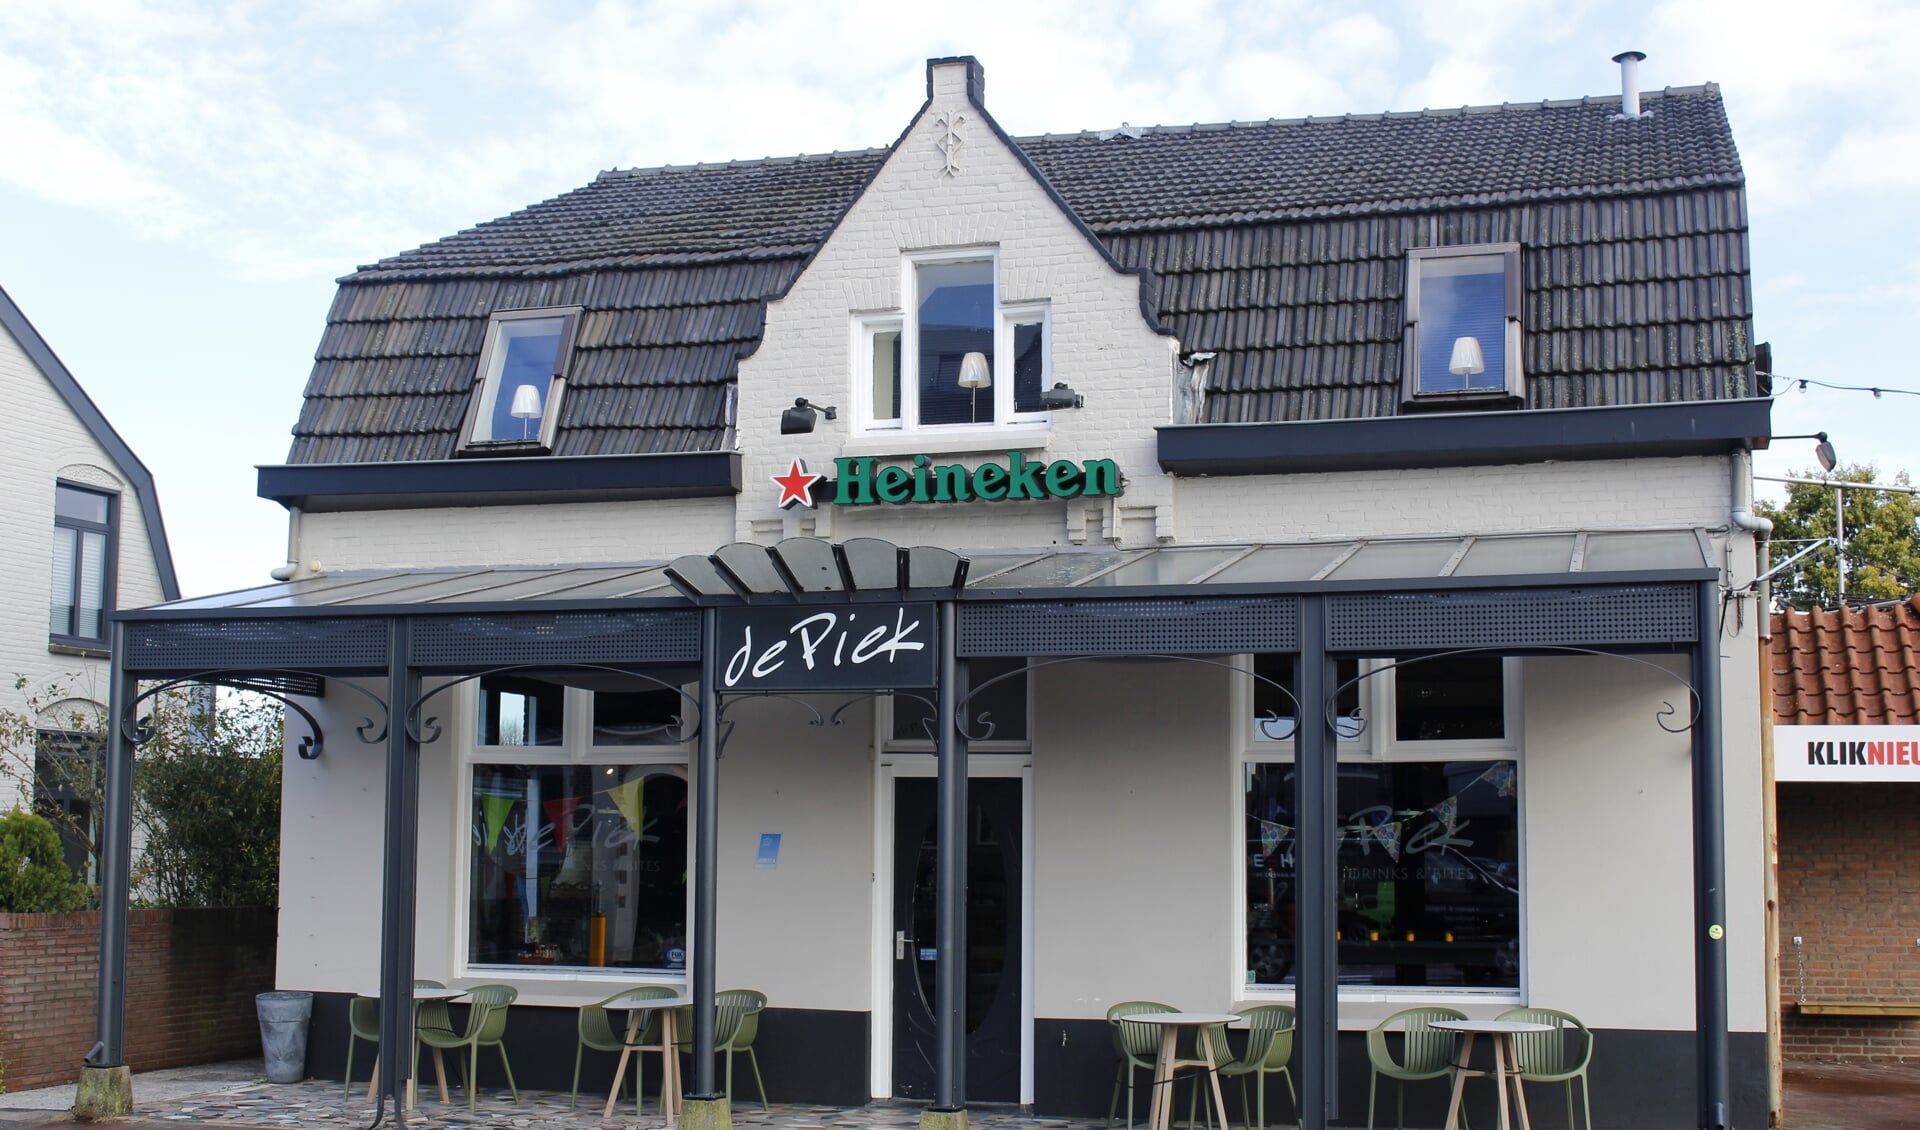 Café De Piek.